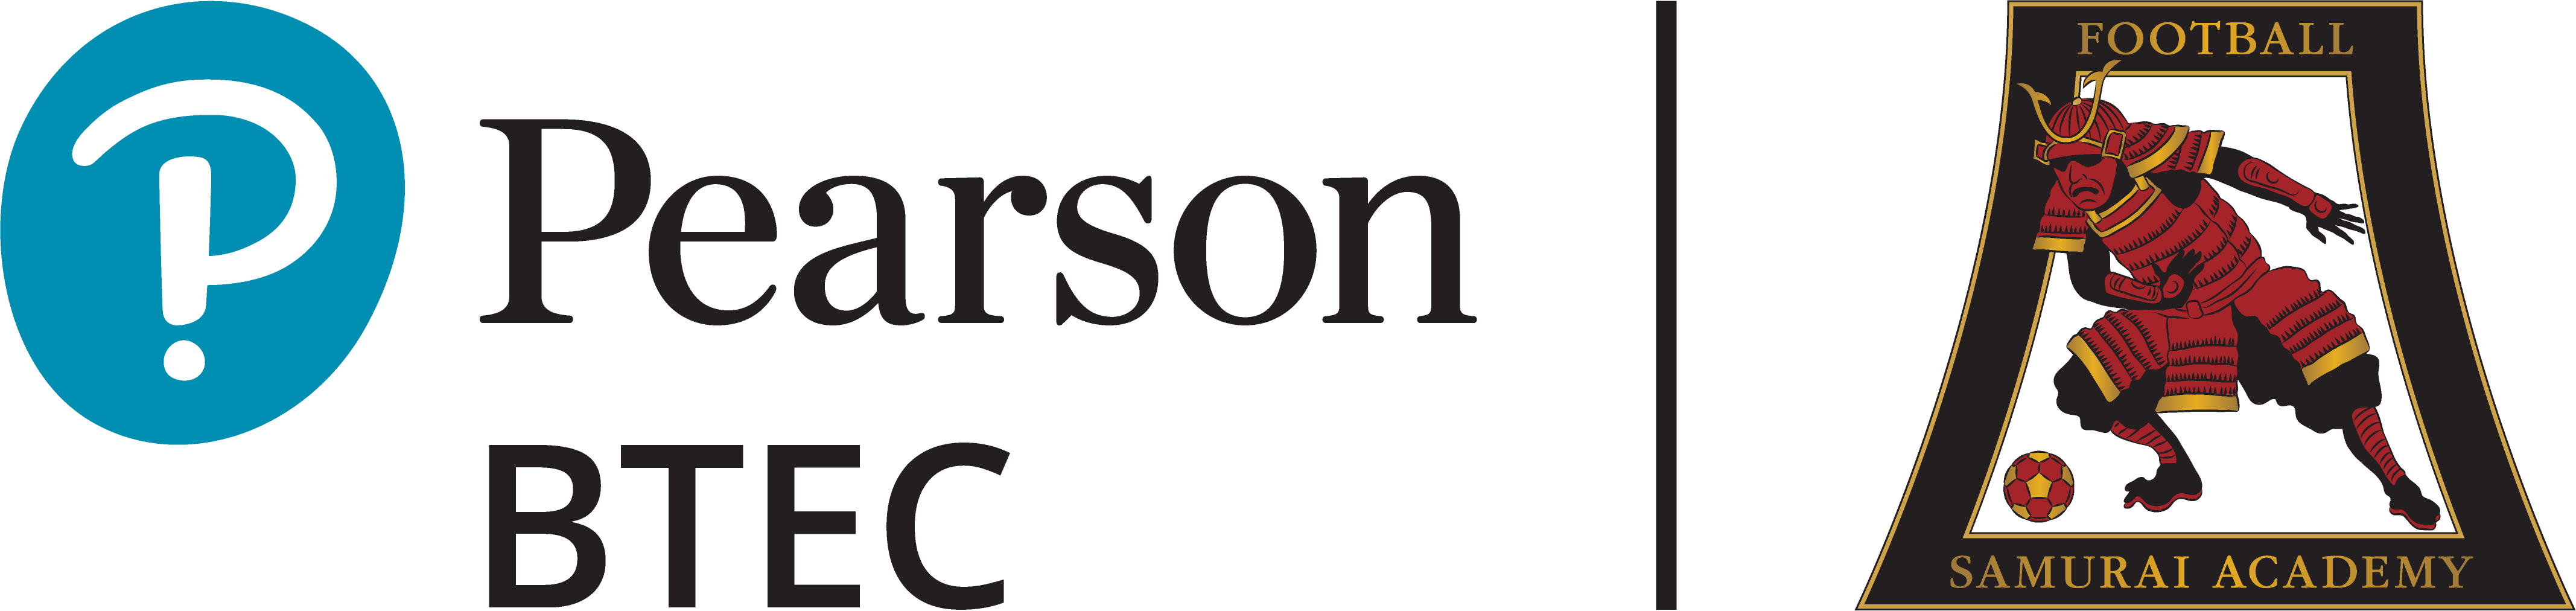 Pearson and Samurai Academy logos